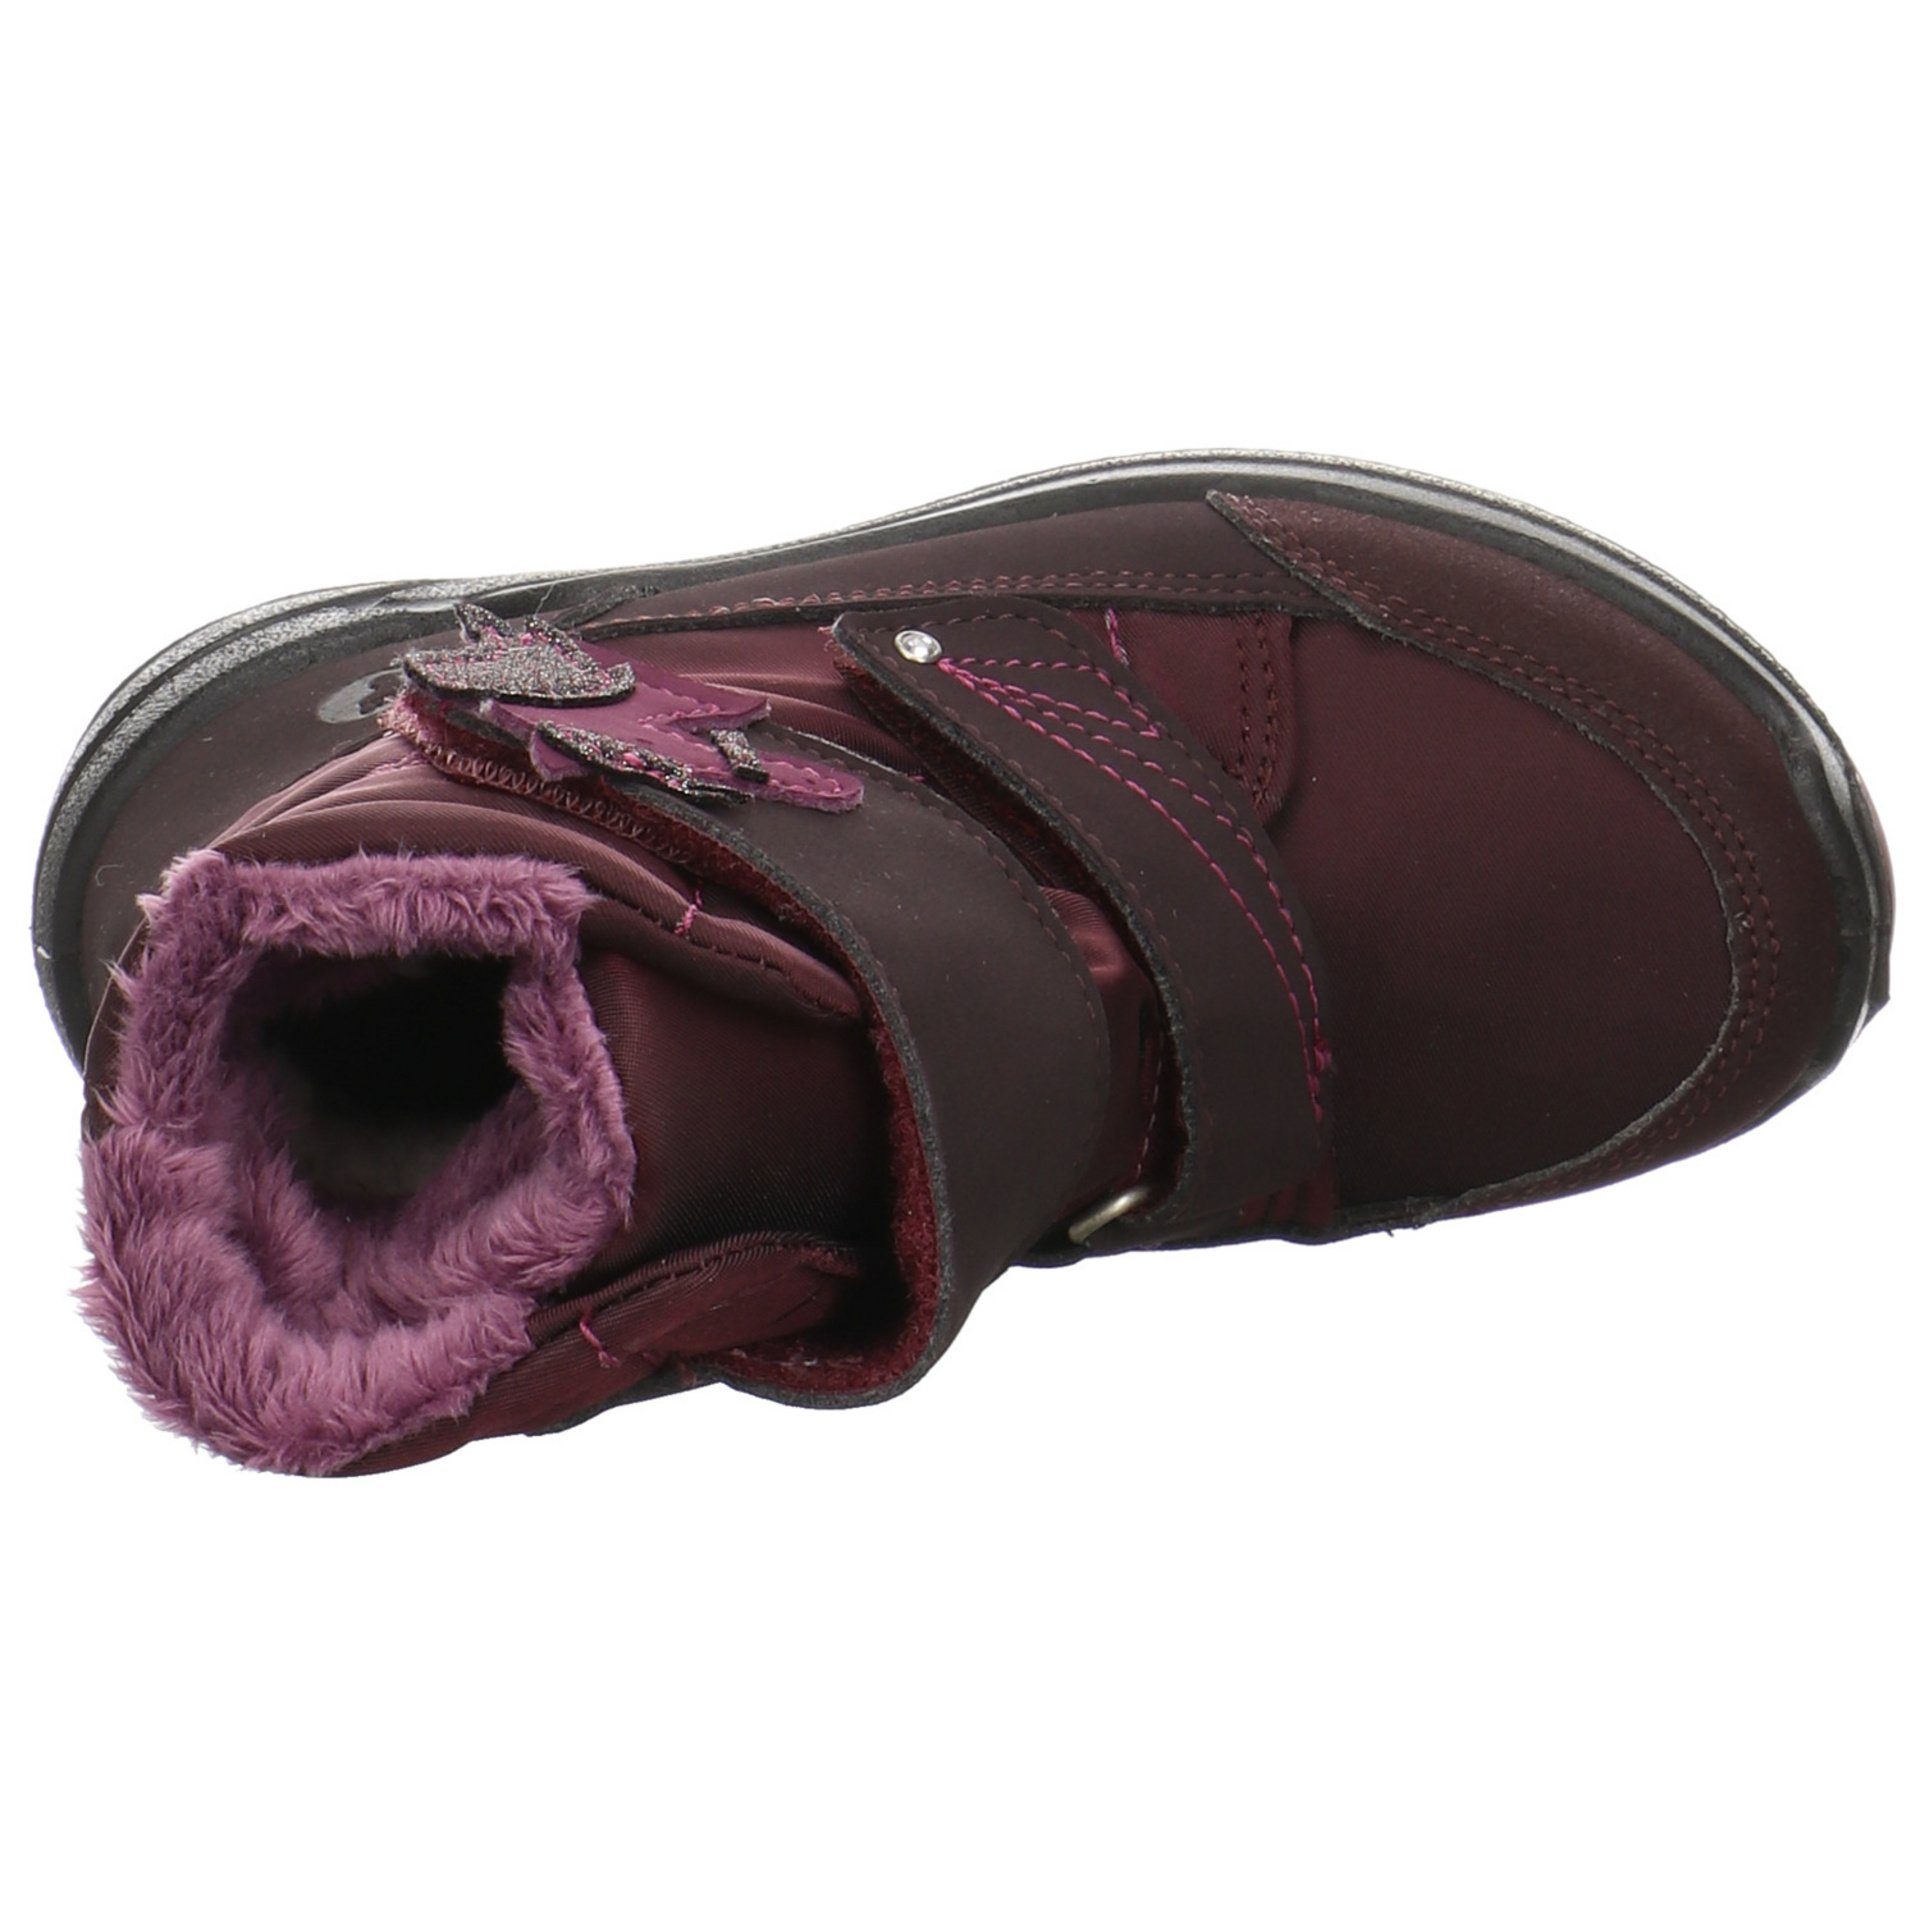 Textil Stiefel Bordeaux Garei Boots Textil uni Ricosta